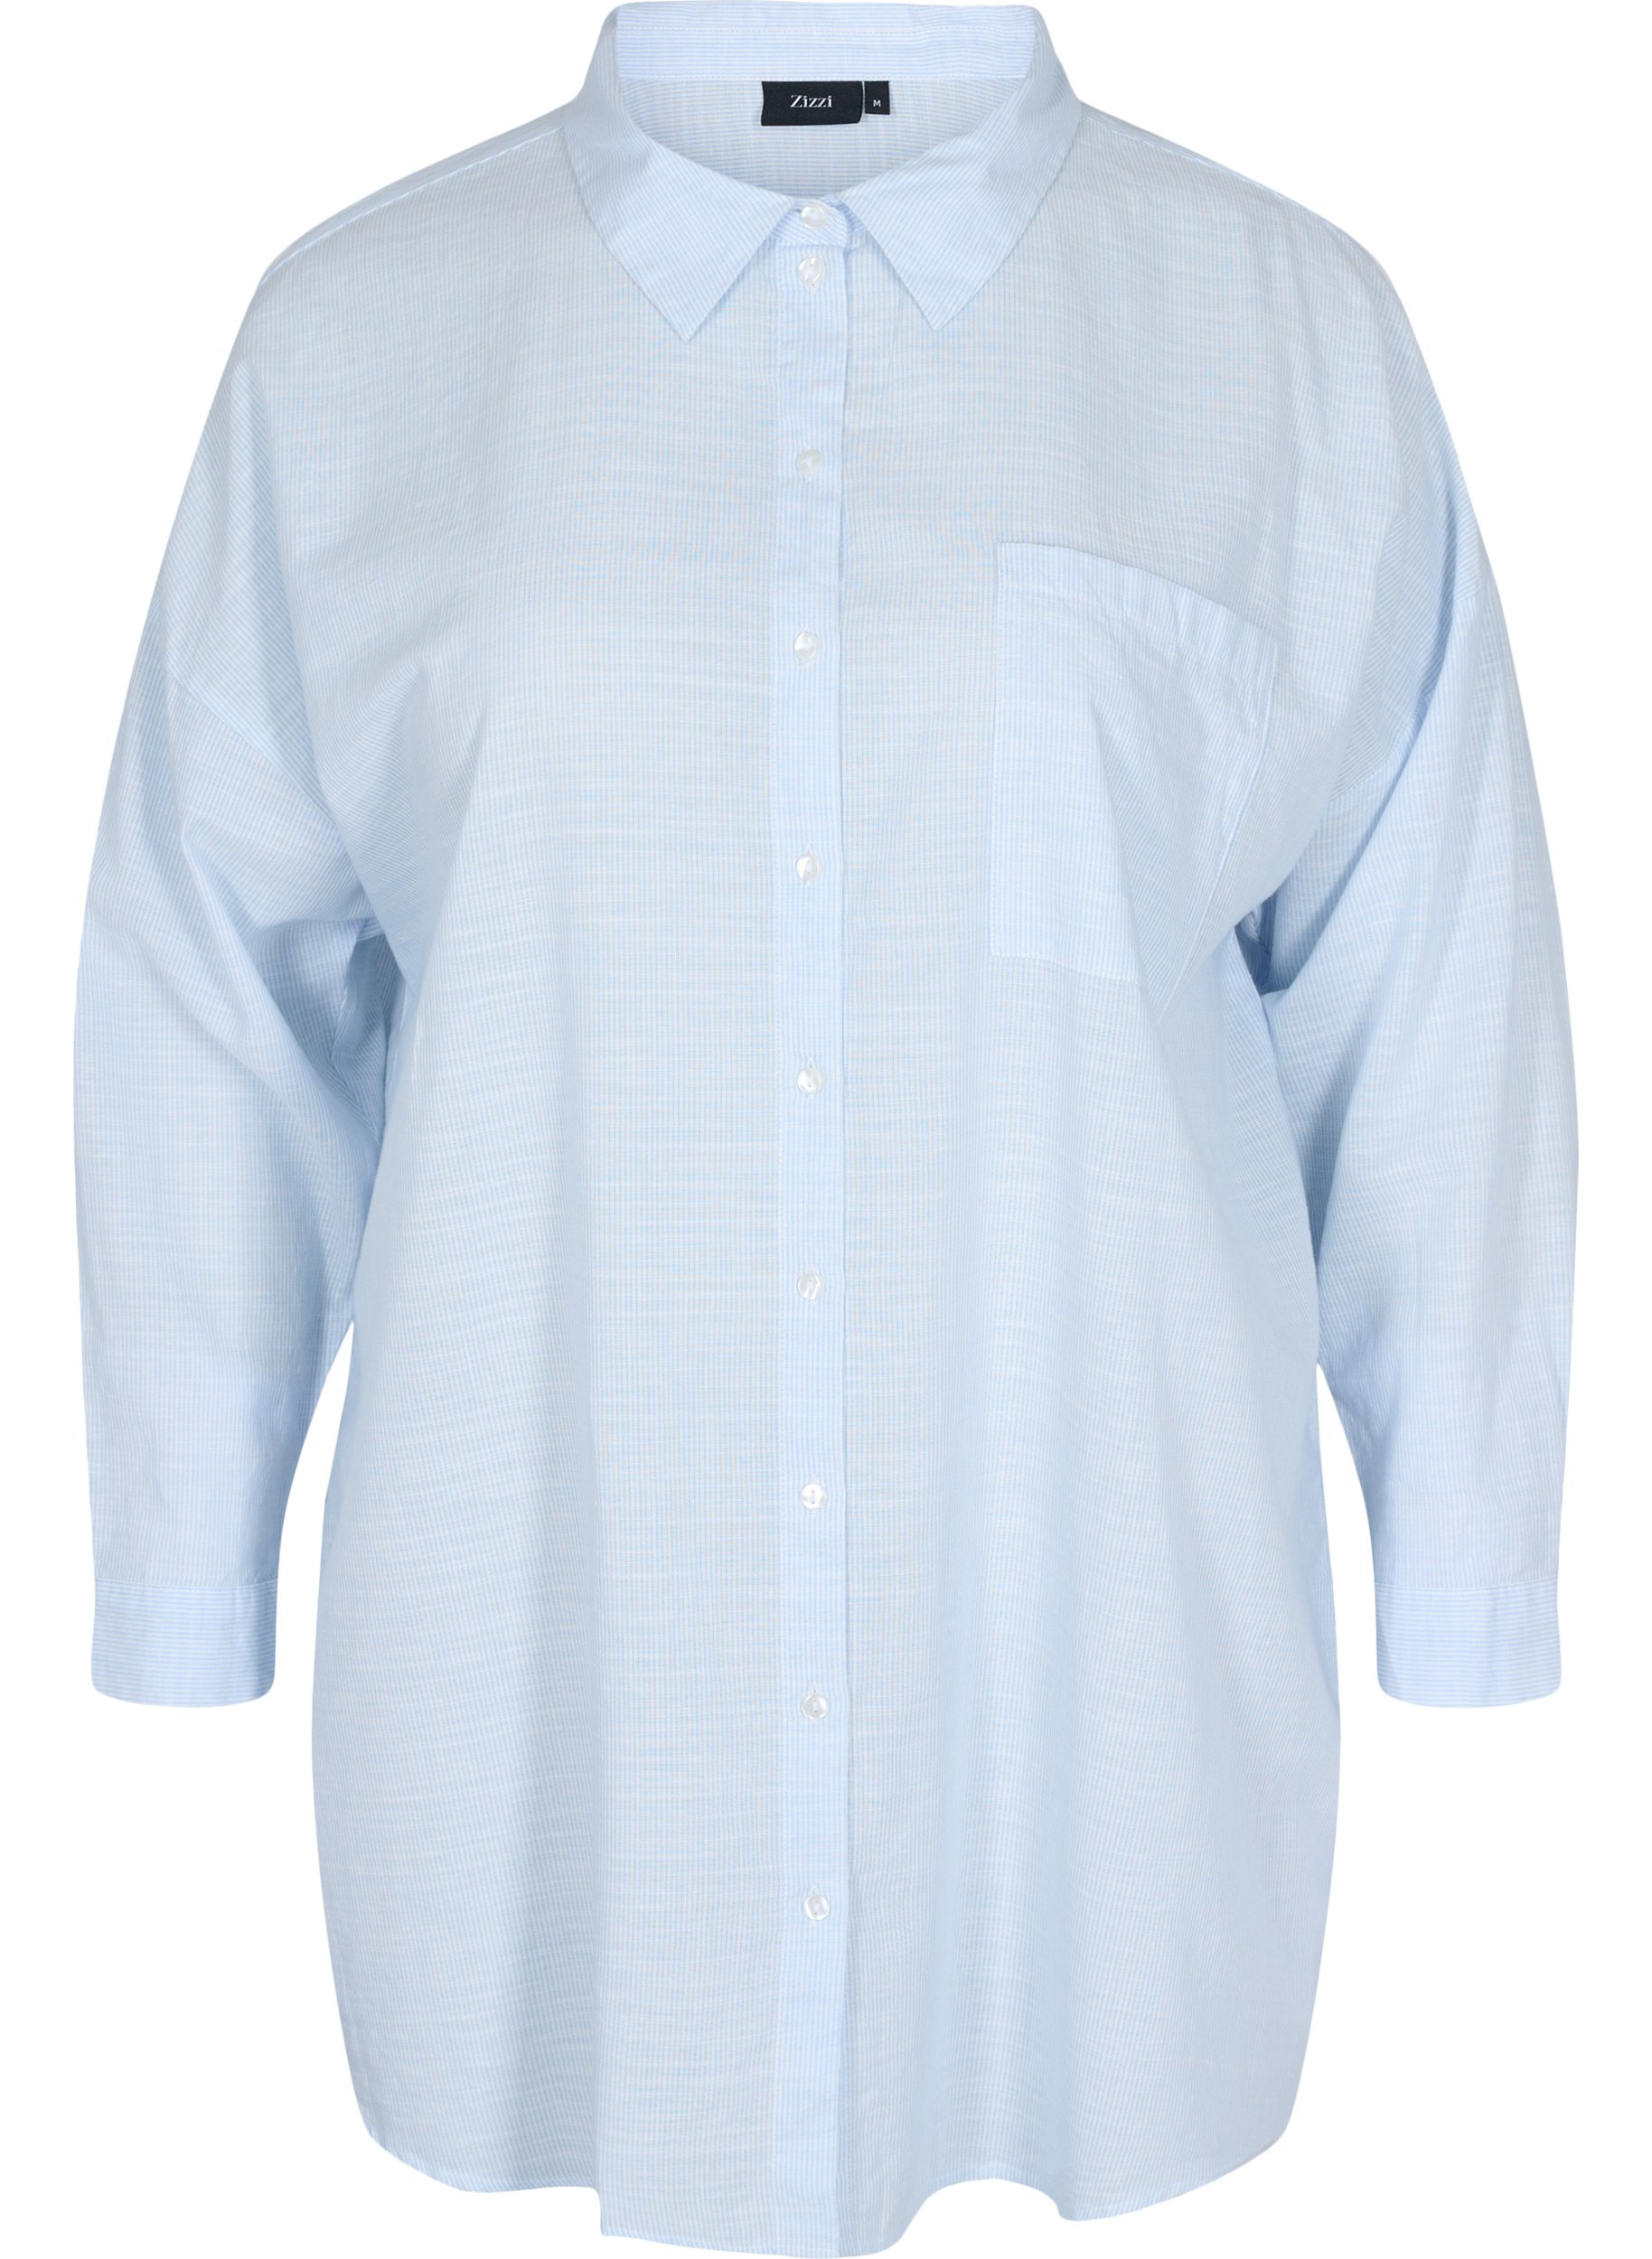 Stripete nattskjorte i bomull, White w. Blue Stripe